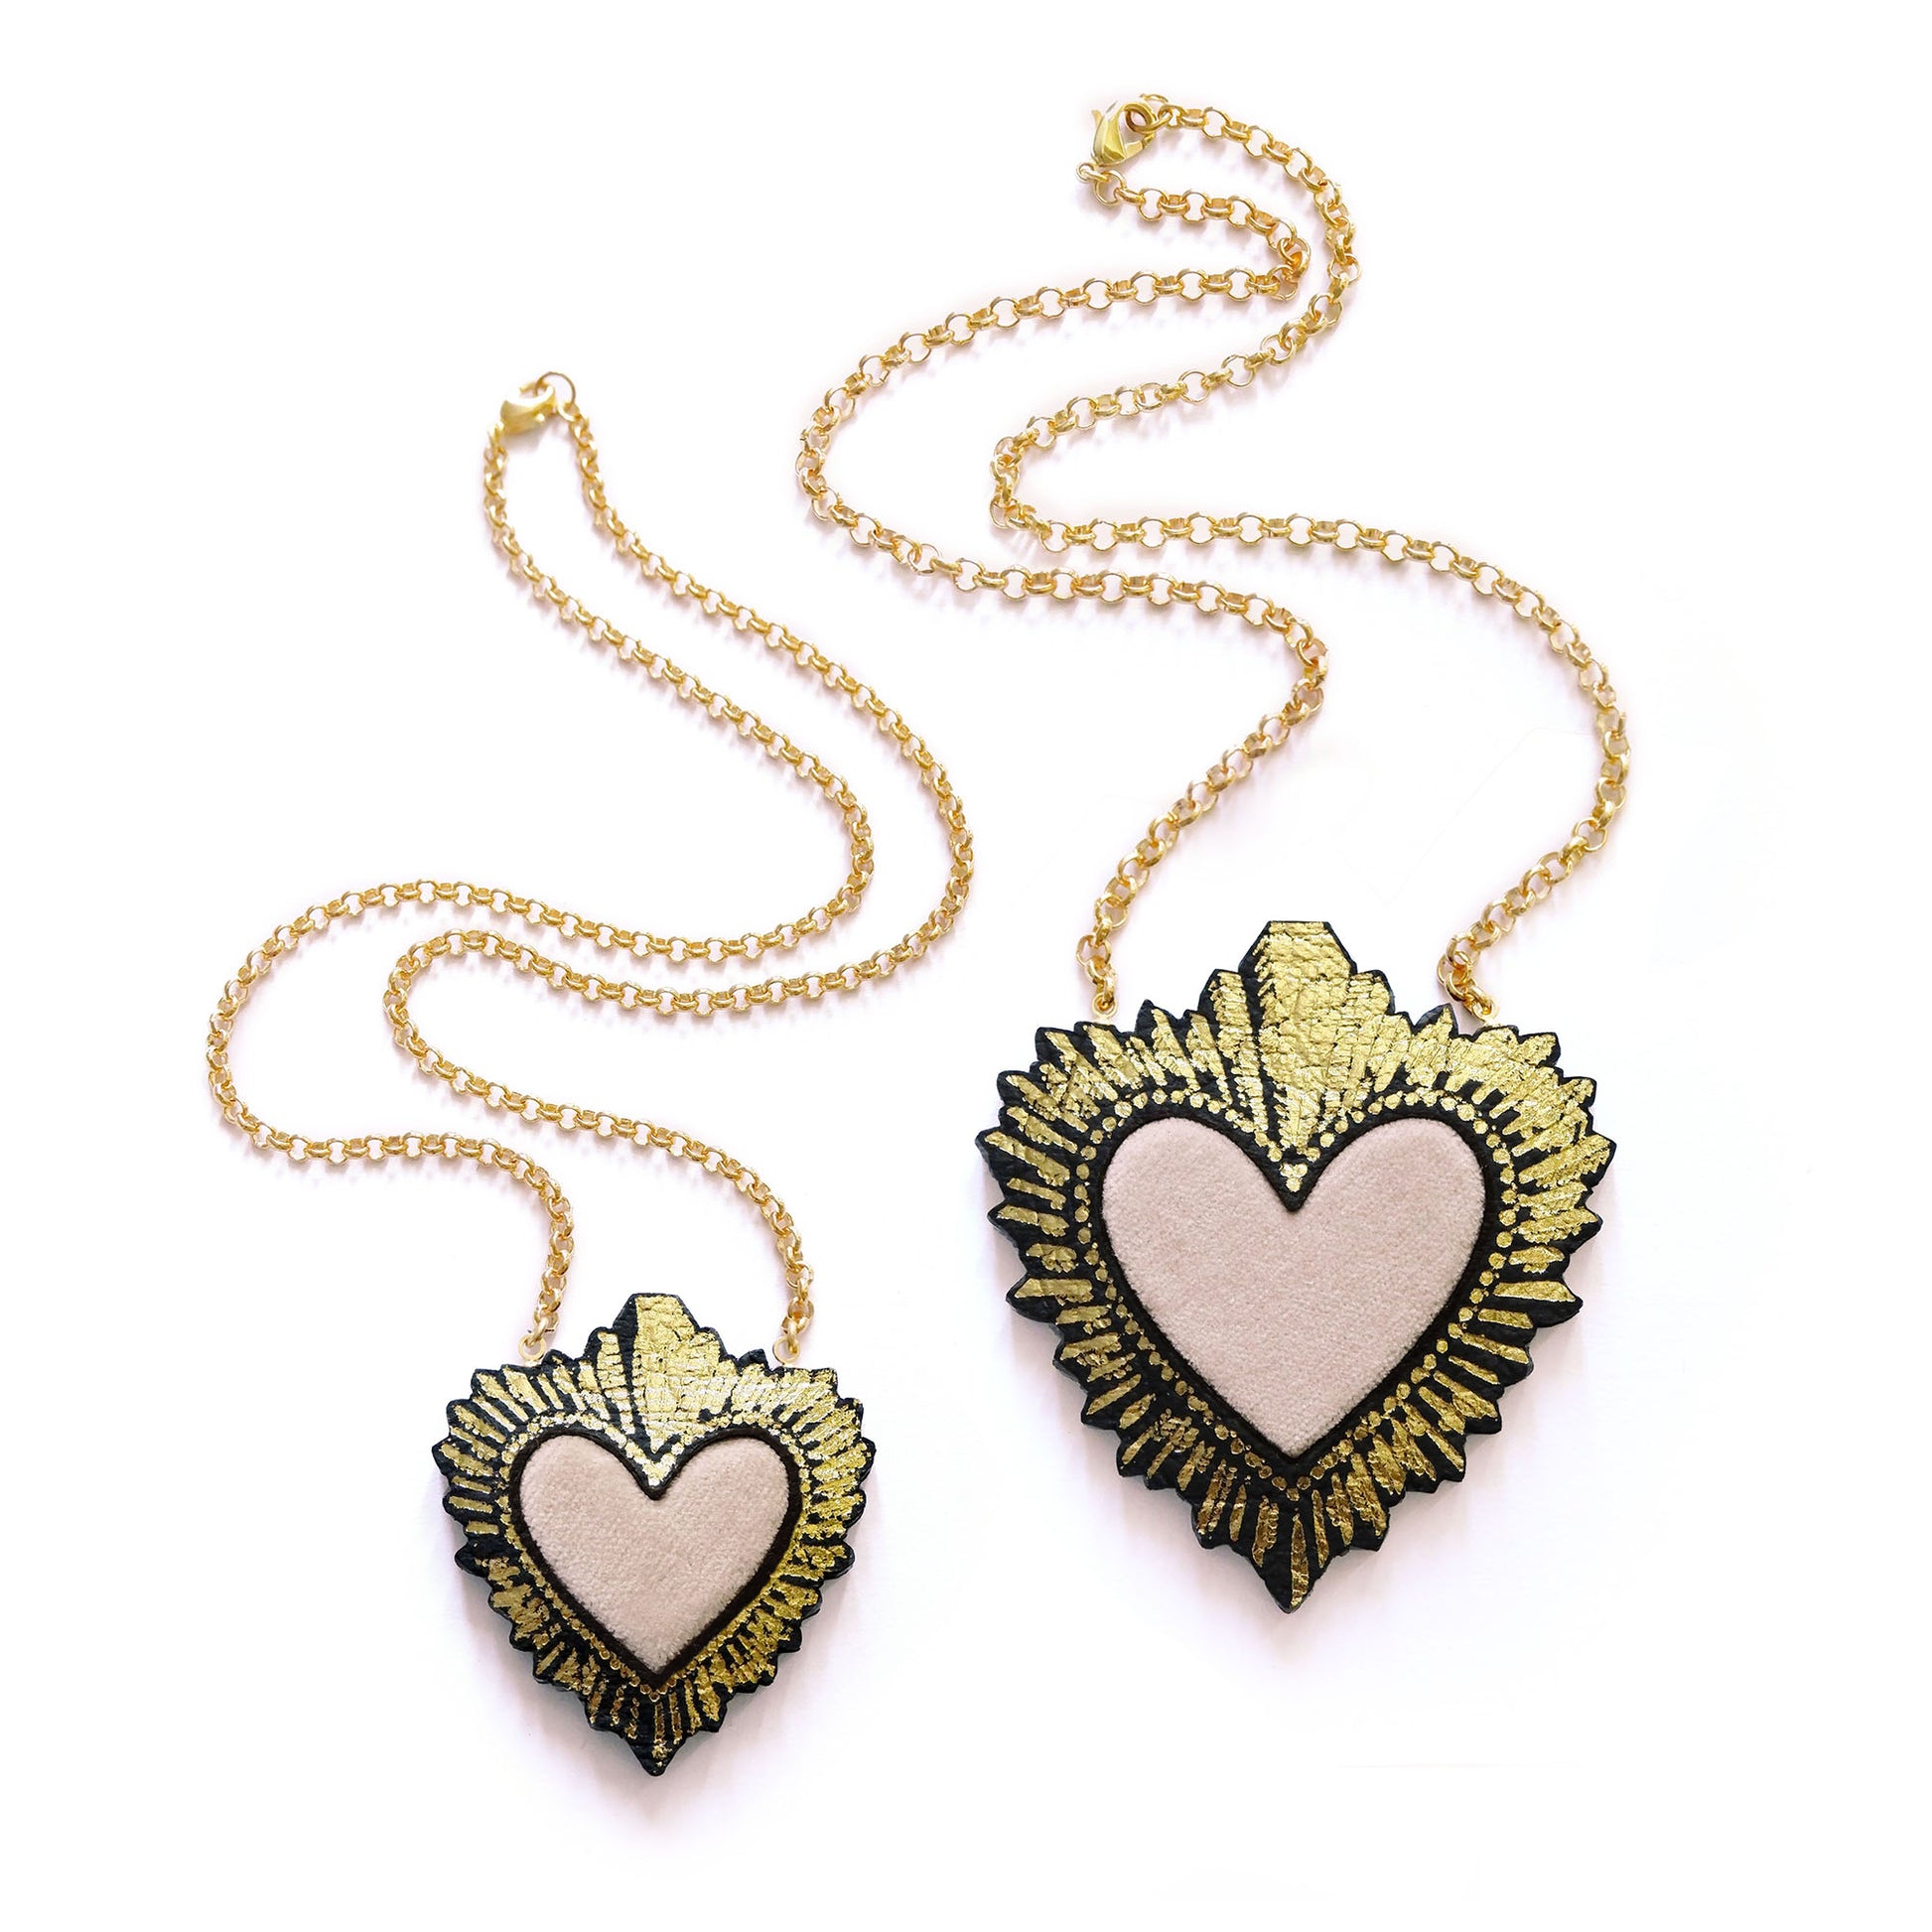 two sizes of ivory velvet sacred heart pendant necklace, on gold belcher chain